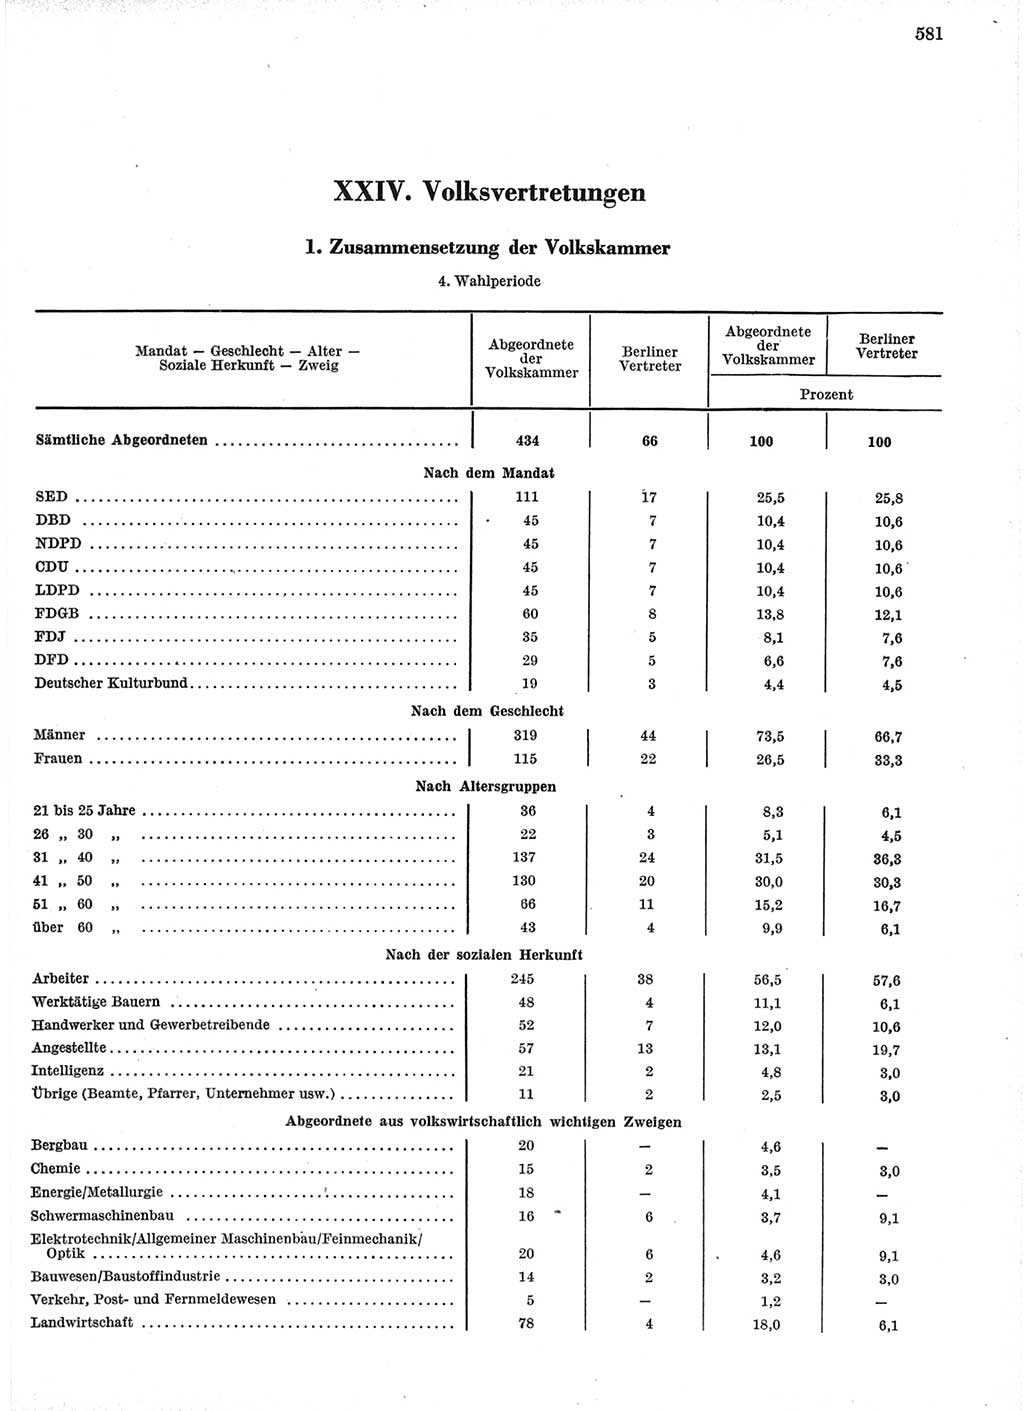 Statistisches Jahrbuch der Deutschen Demokratischen Republik (DDR) 1966, Seite 581 (Stat. Jb. DDR 1966, S. 581)